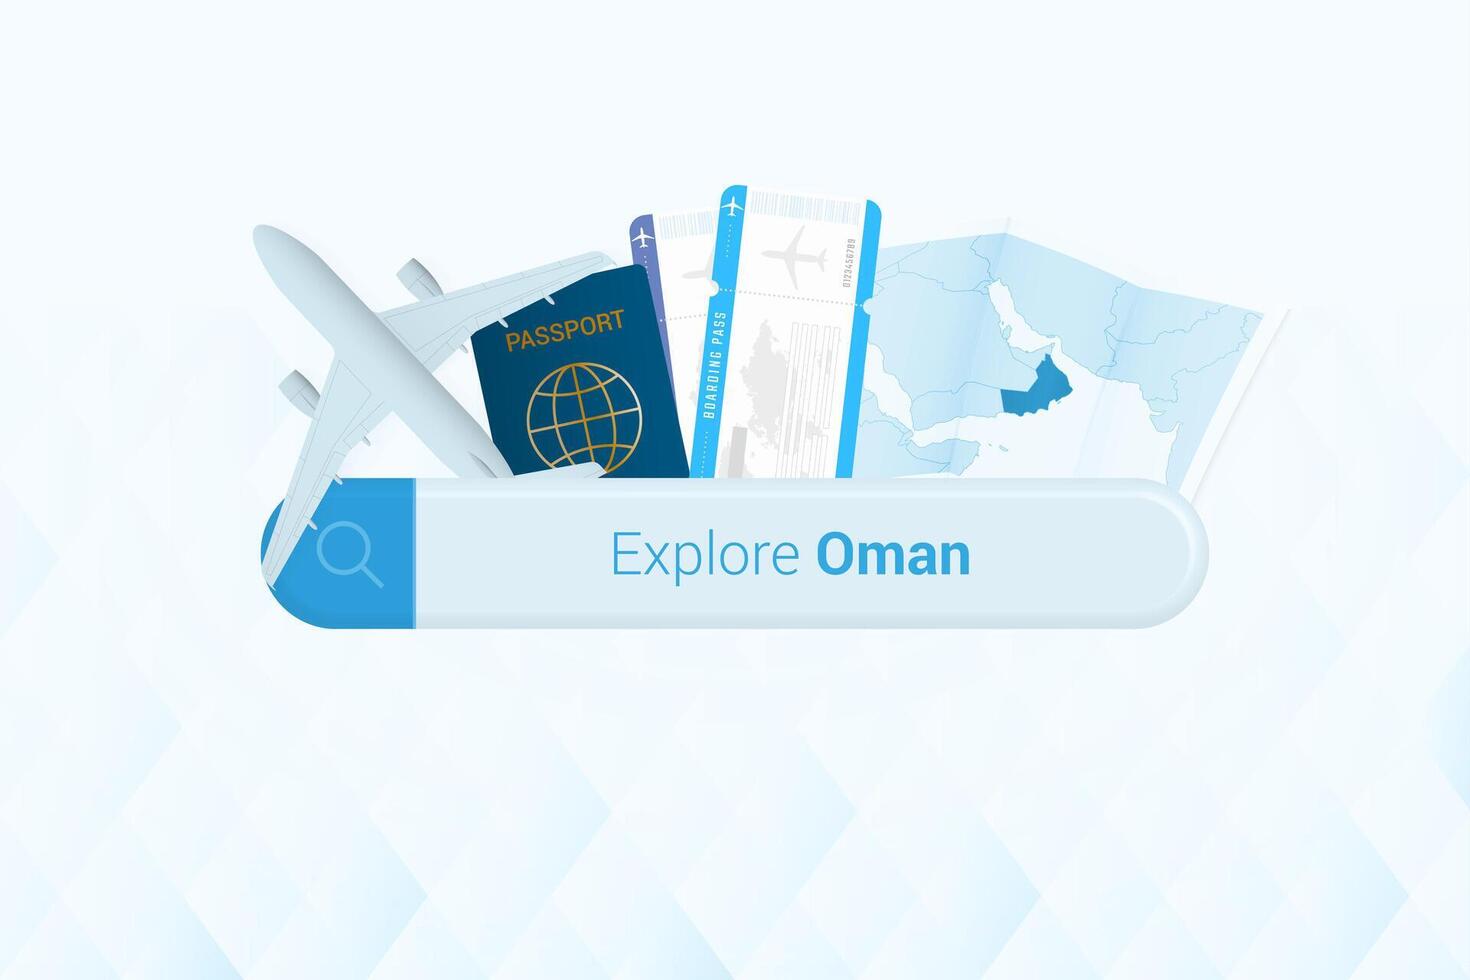 recherche des billets à Oman ou Voyage destination dans Oman. recherche bar avec avion, passeport, embarquement passer, des billets et carte. vecteur